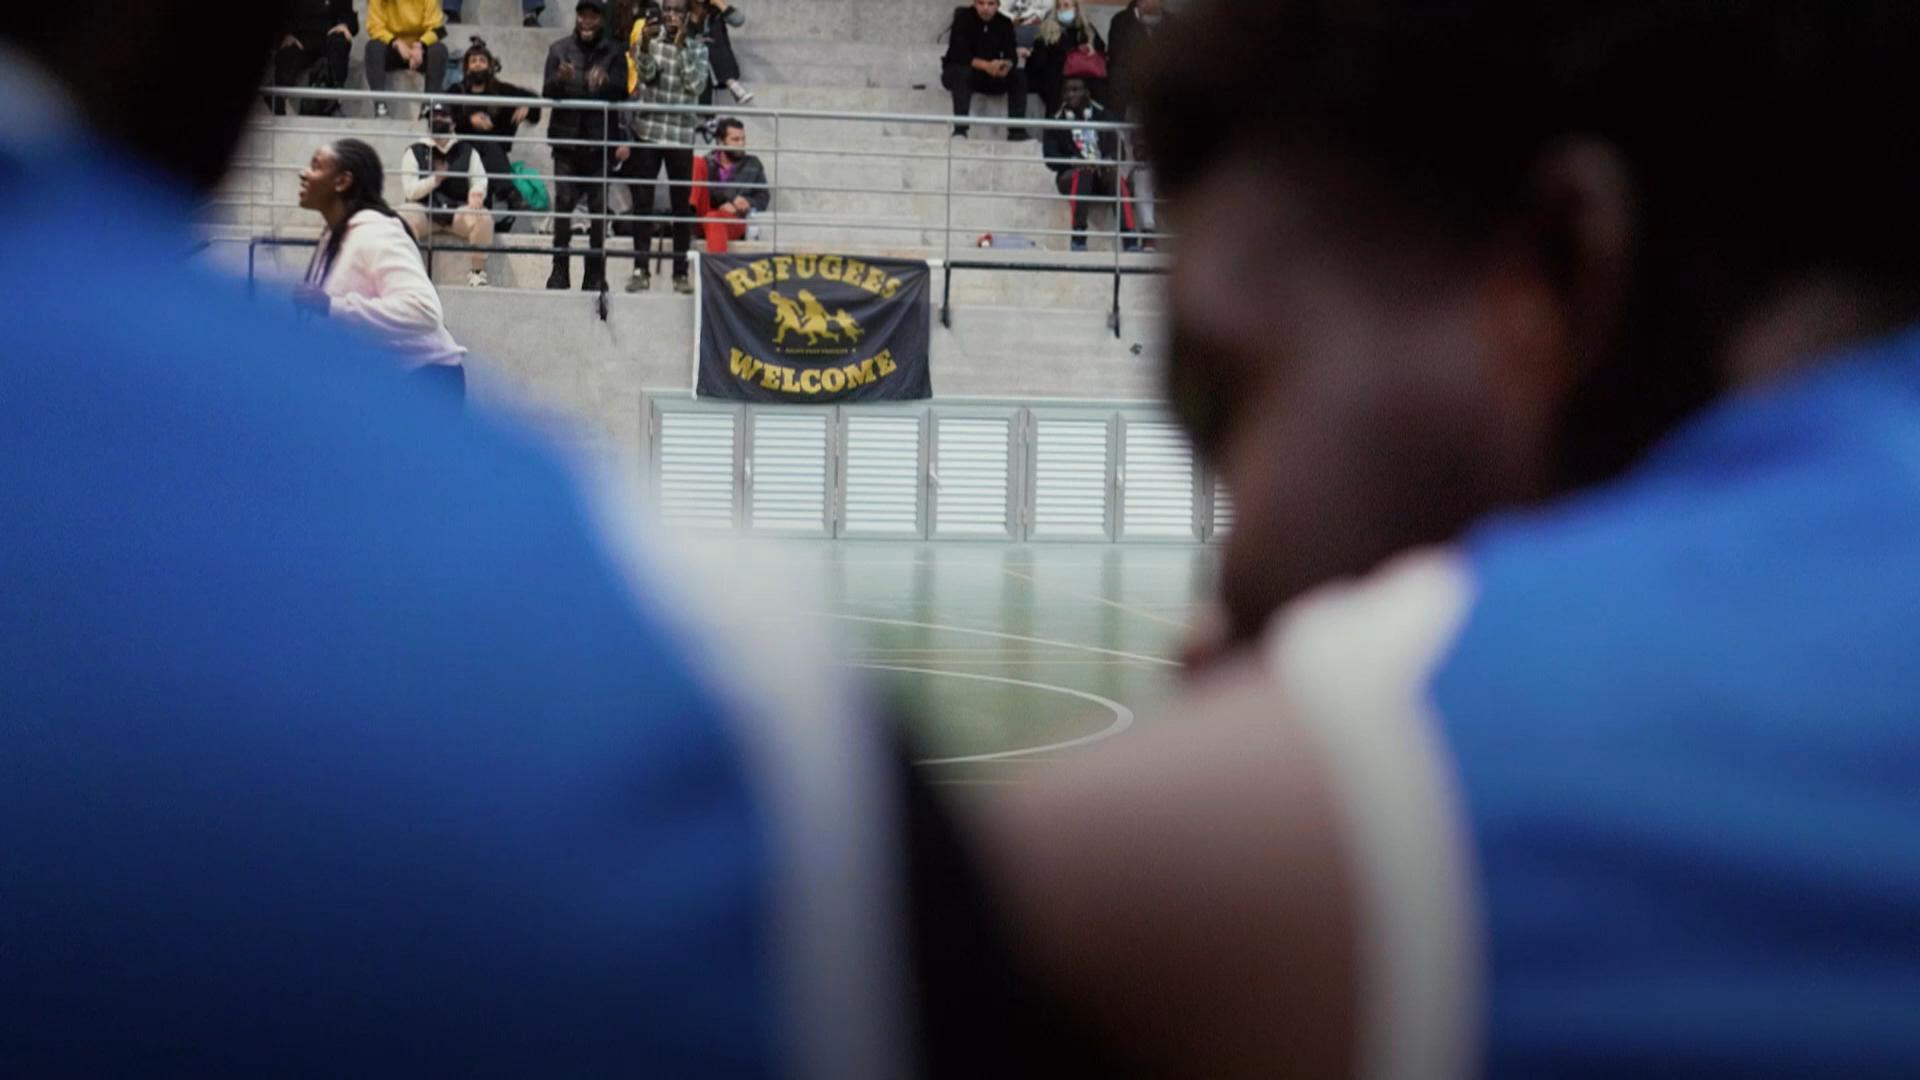 Περιμένοντας να εξεταστούν οι αιτήσεις τους, πρόσφυγες και μετανάστες προπονούνται στην ομάδα μπάσκετ HOPE στη Λευκωσία.